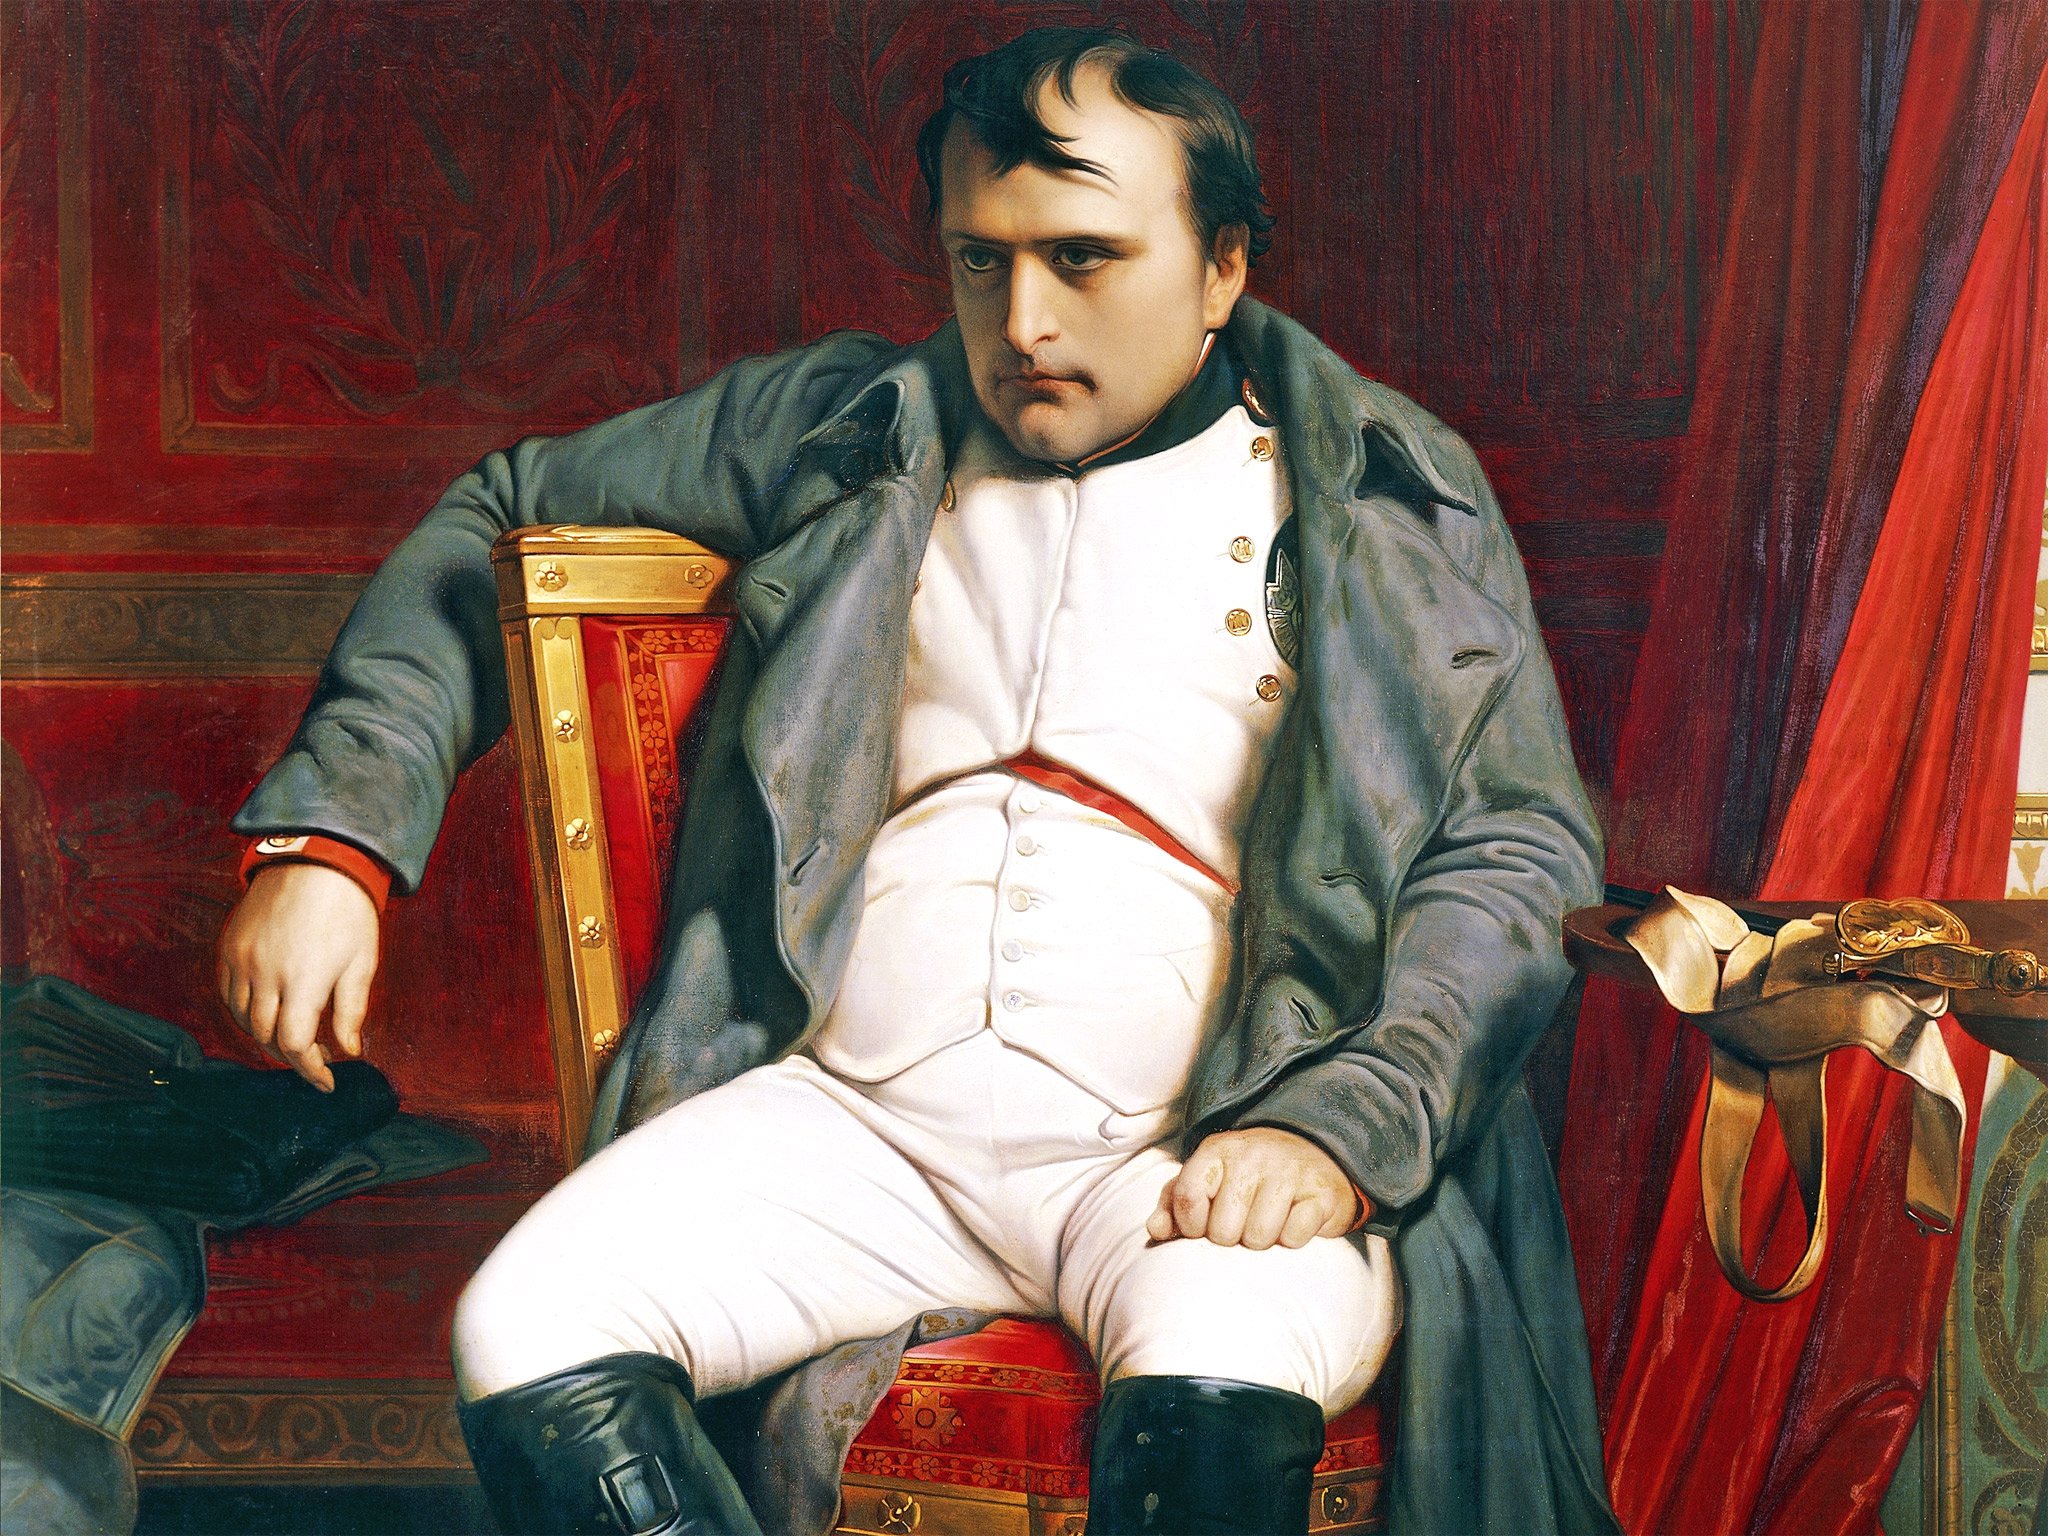 Résultat de recherche d'images pour "Napoléon"